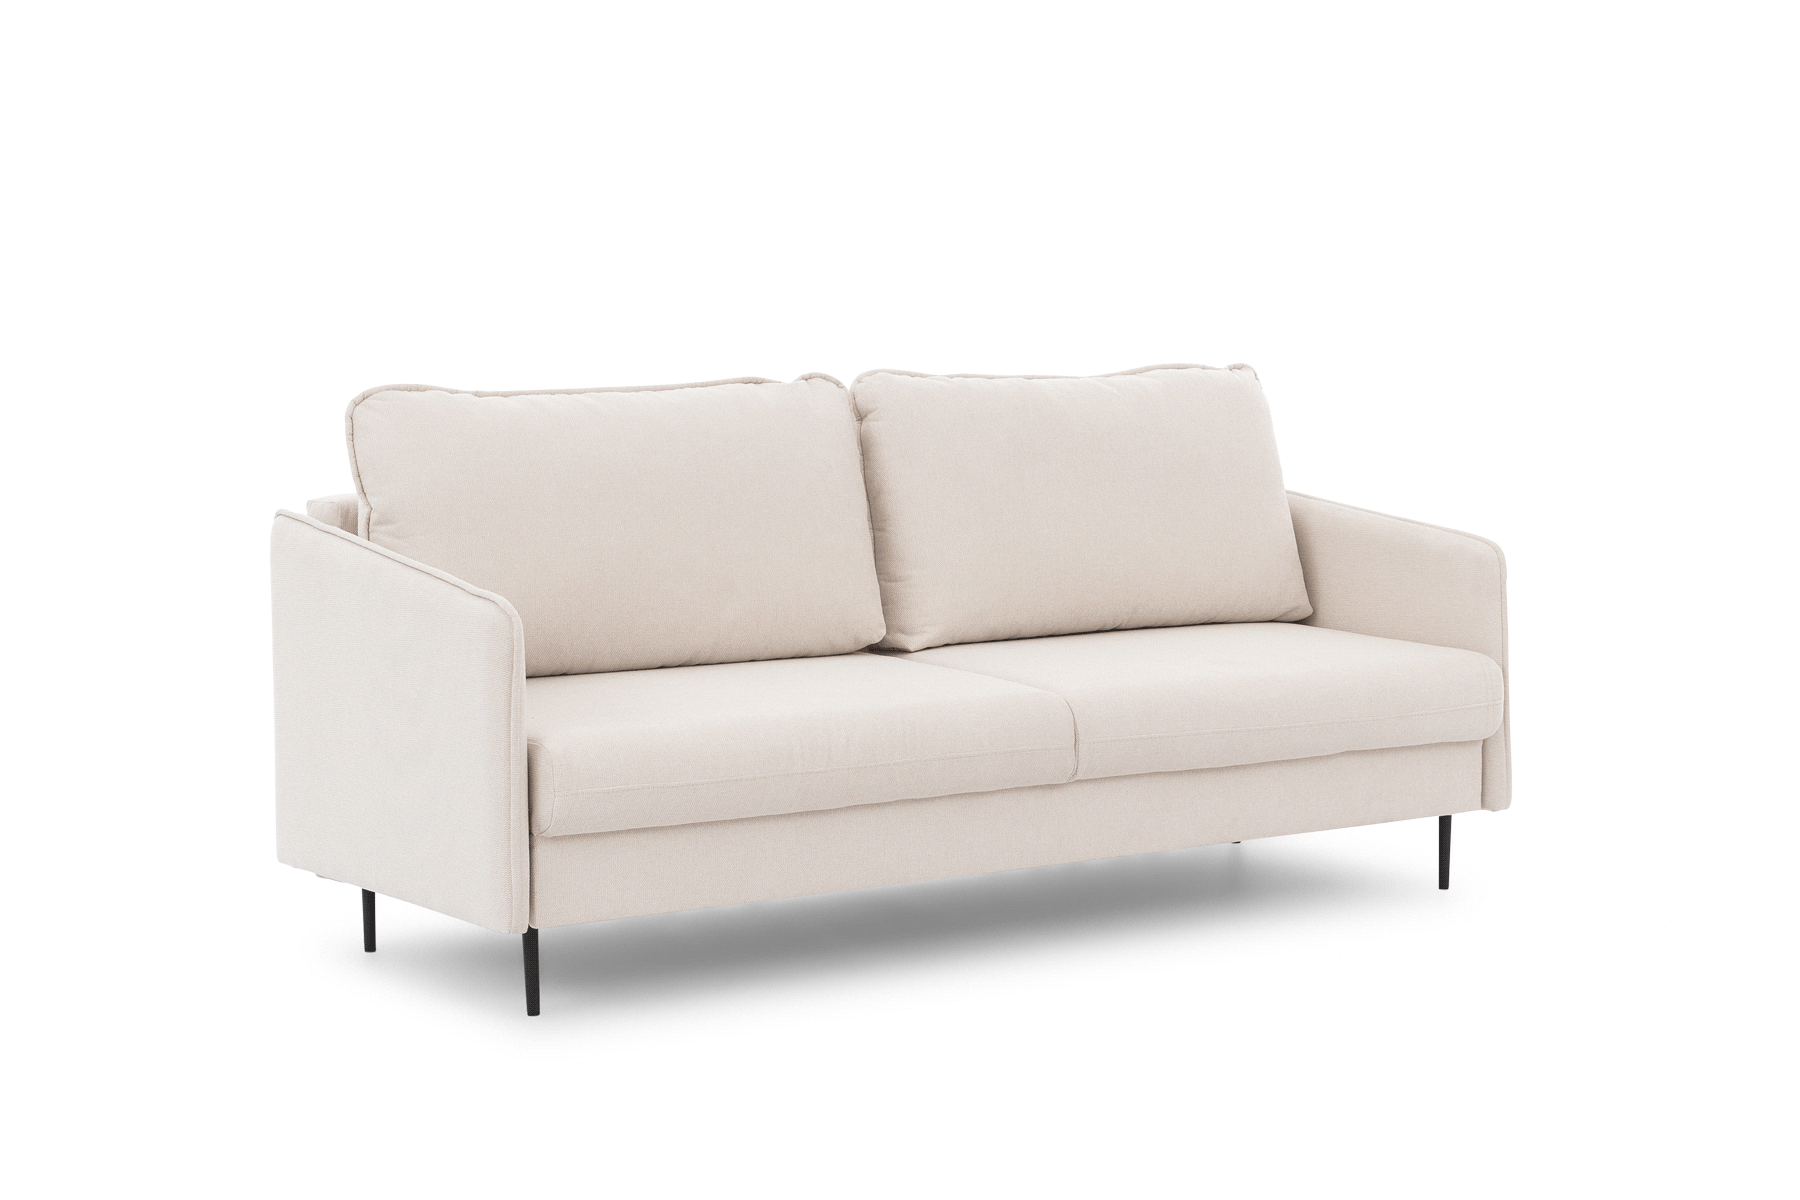 Taila kinyitható kanapé - Gemma 86, fekete lábak Taila kinyitható kanapé 